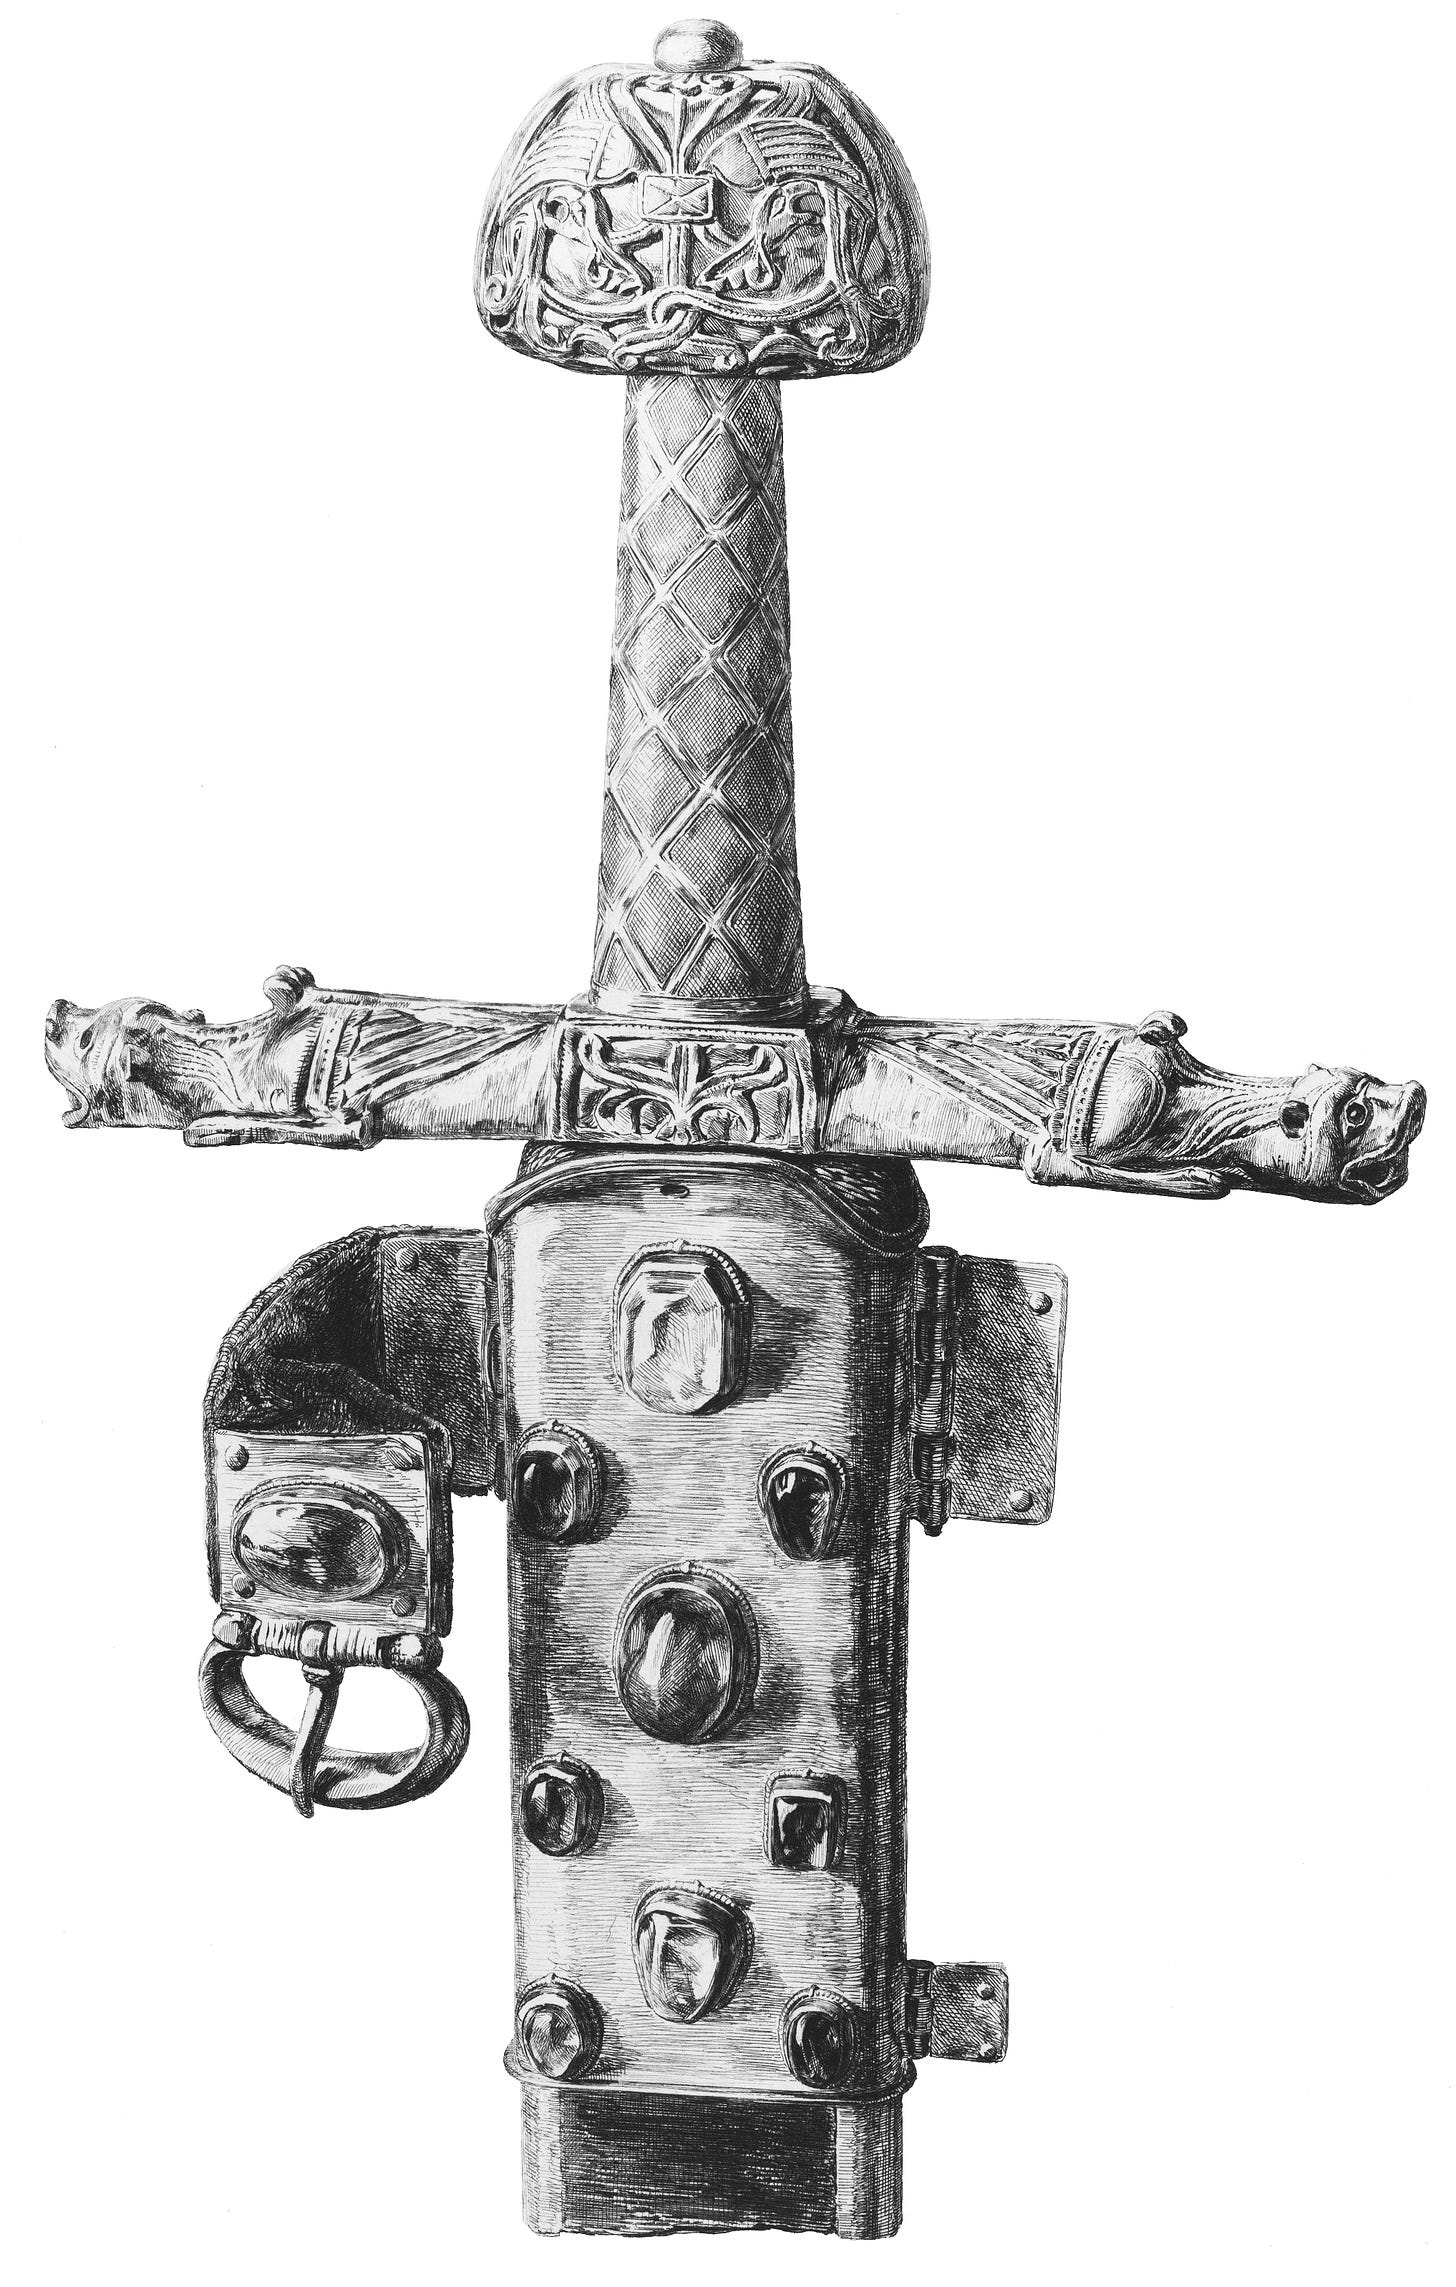 Black and white illustration of an ornate sword hilt and pommel